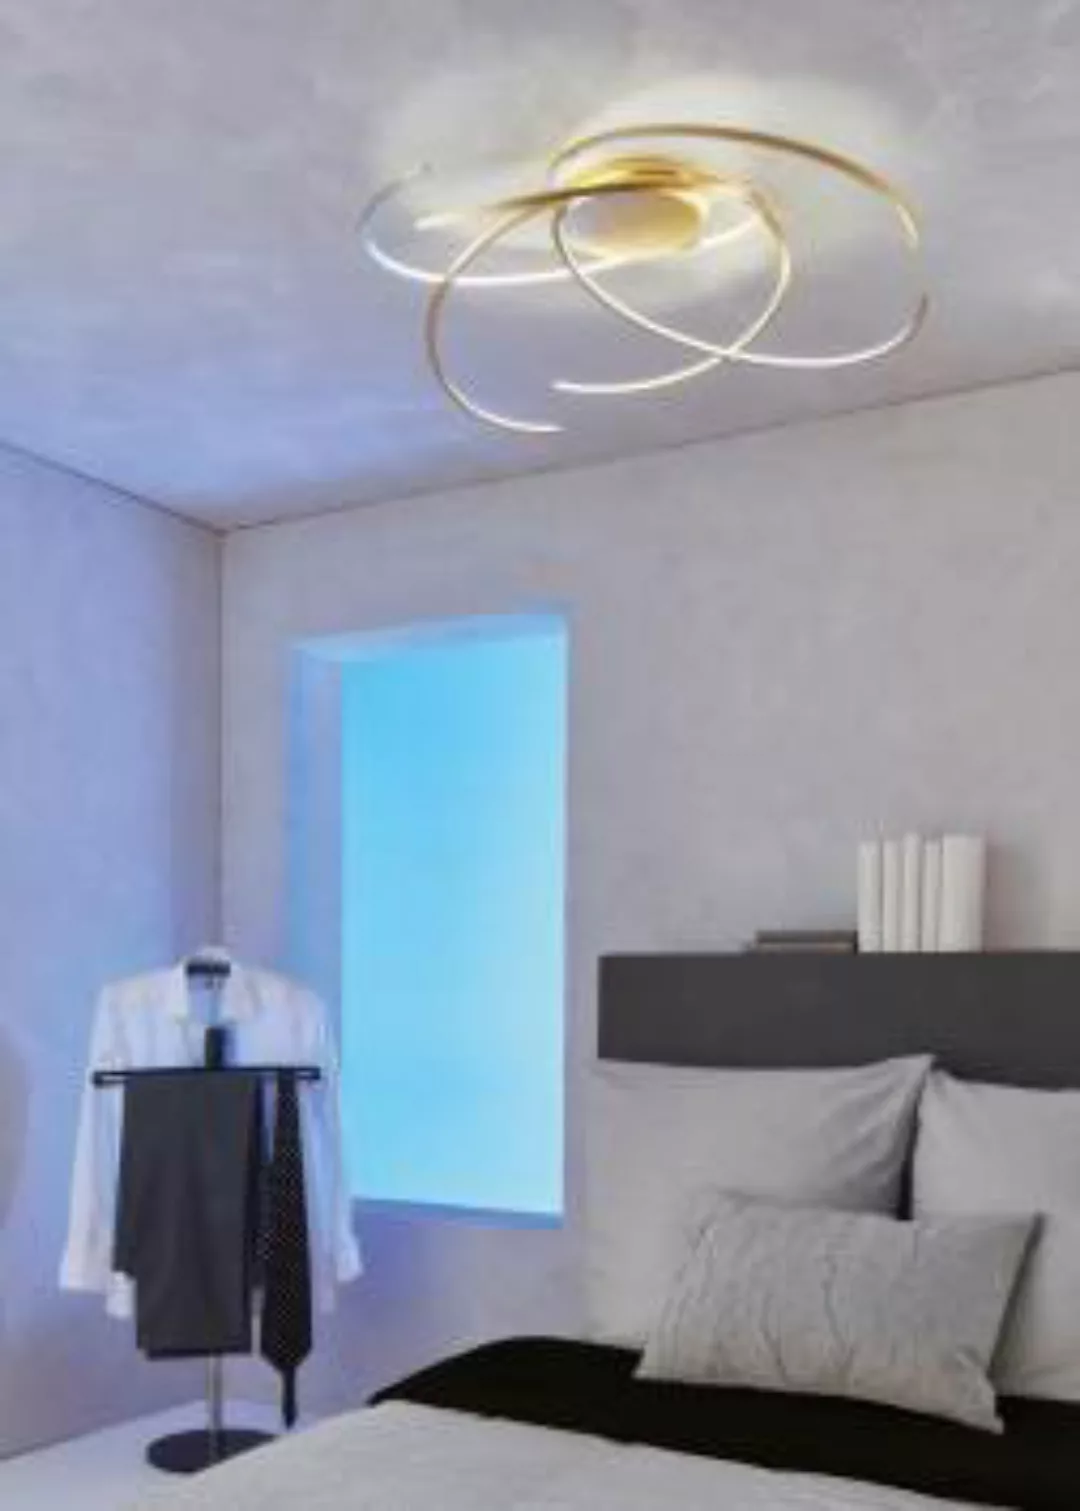 Escale - 45280209 Moderne Deckenleuchte Blattgold LED dimmbar edel Raumlich günstig online kaufen